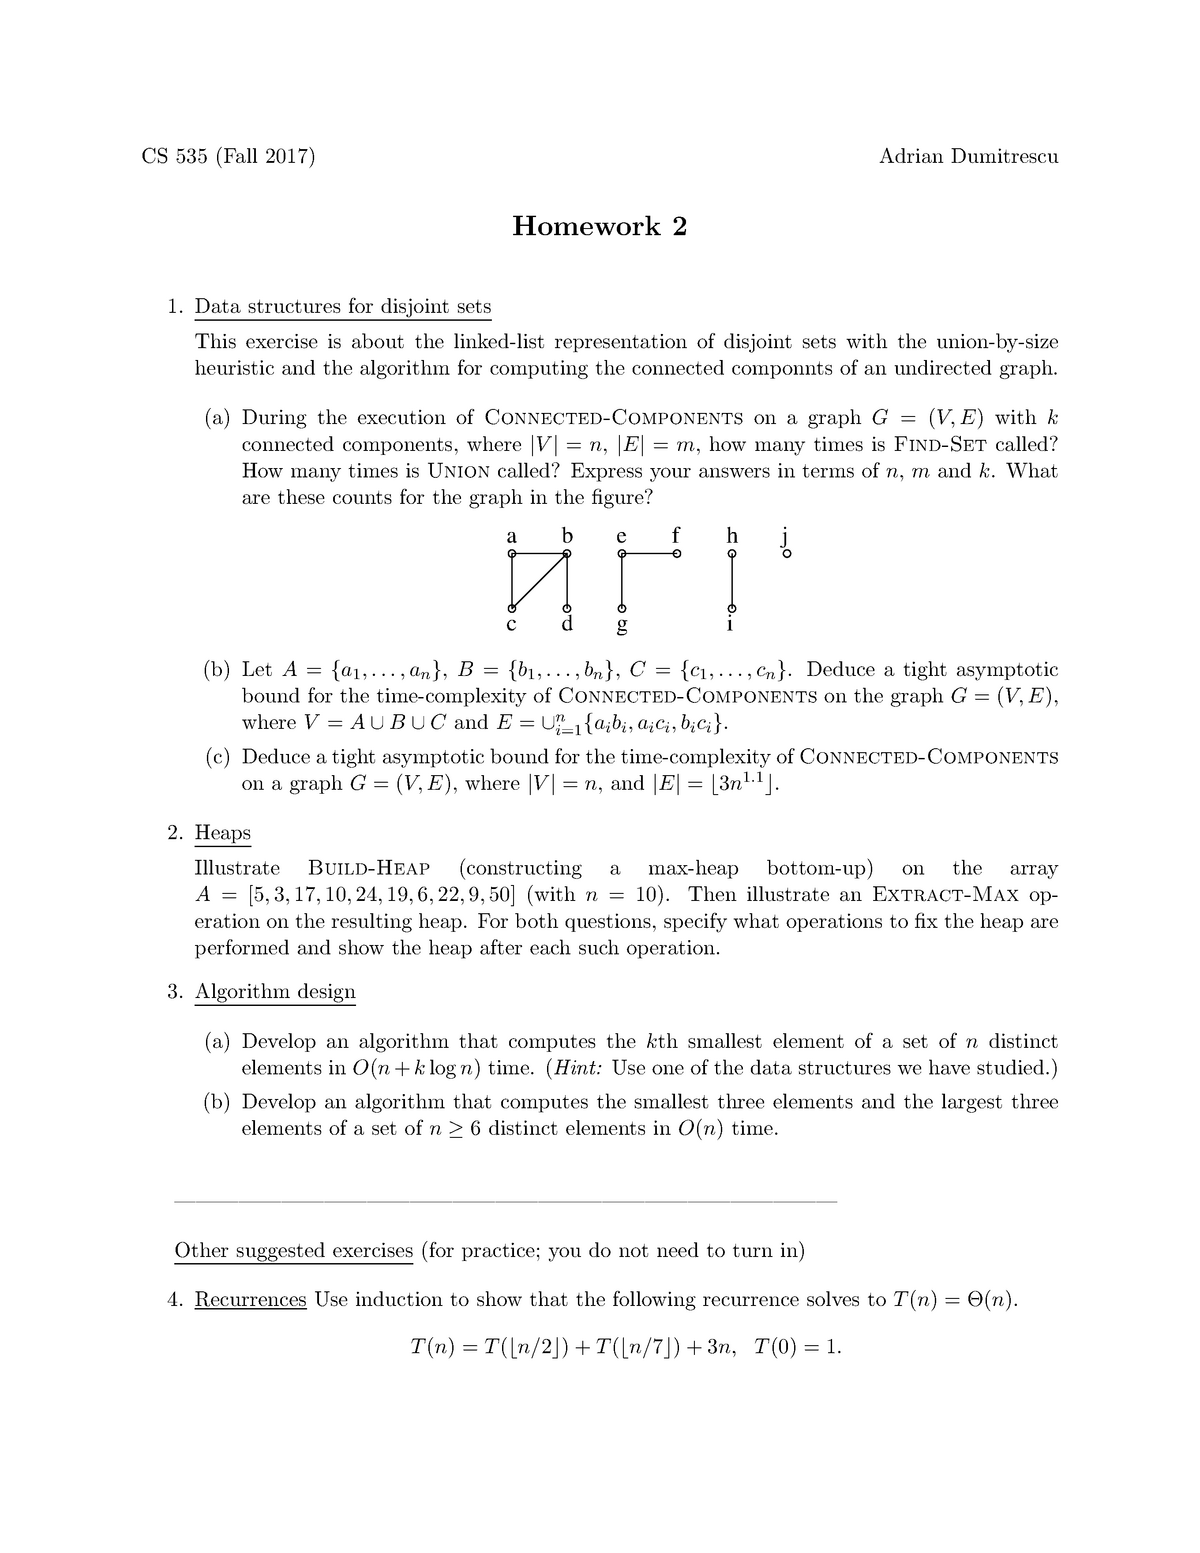 Homework 2 For Cs 535 Algorithm Design And Analysis Fall 17 Studocu